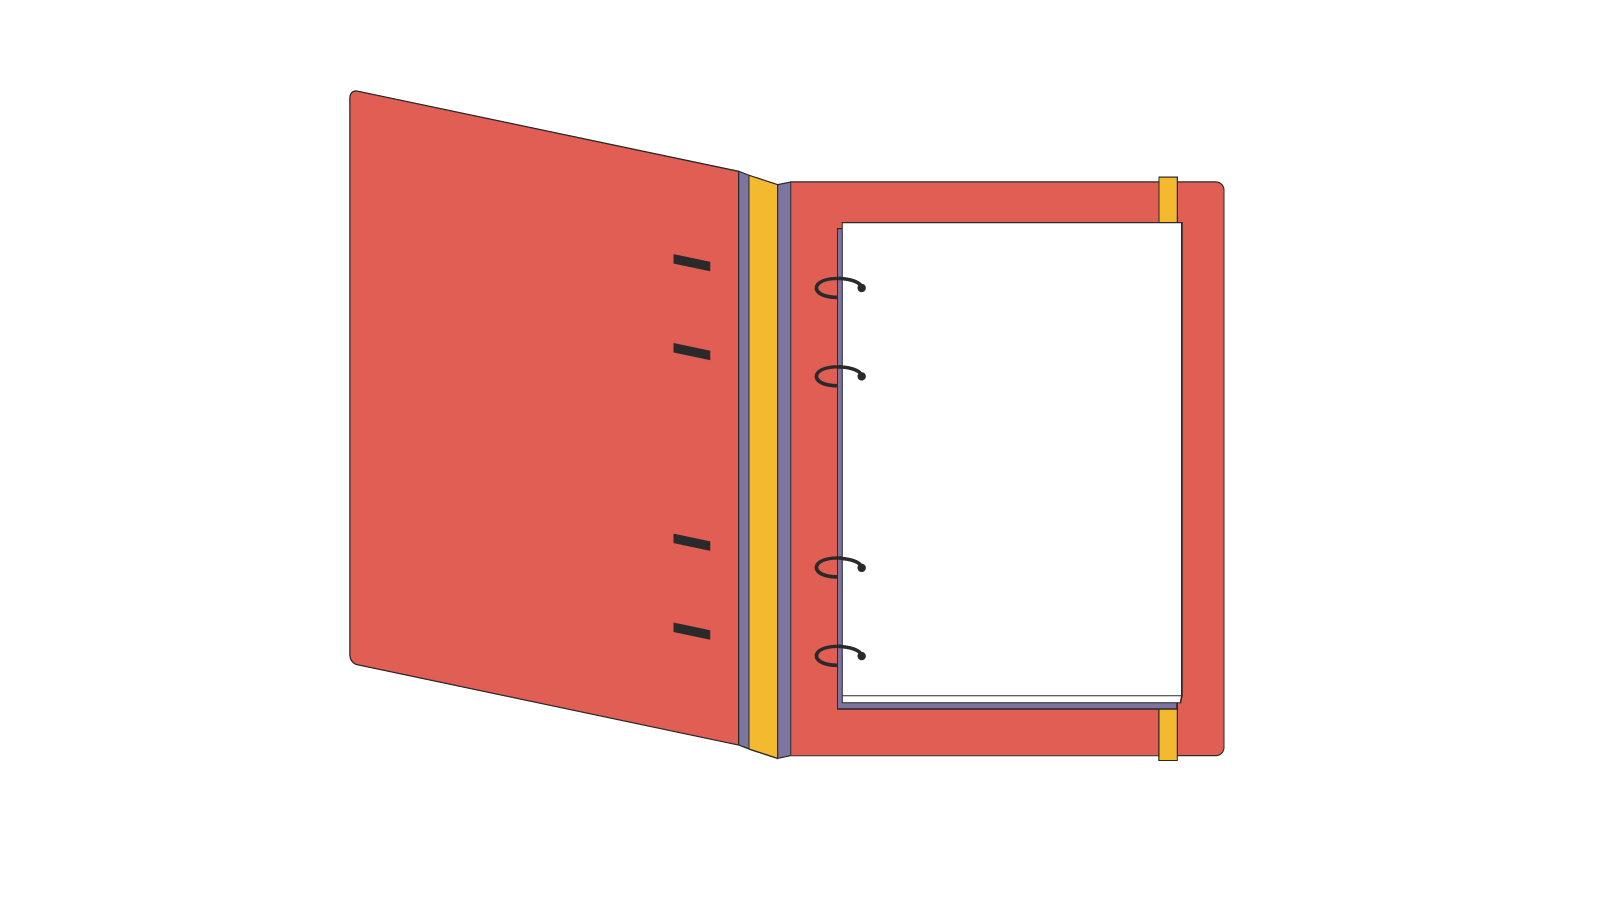 An open notebook